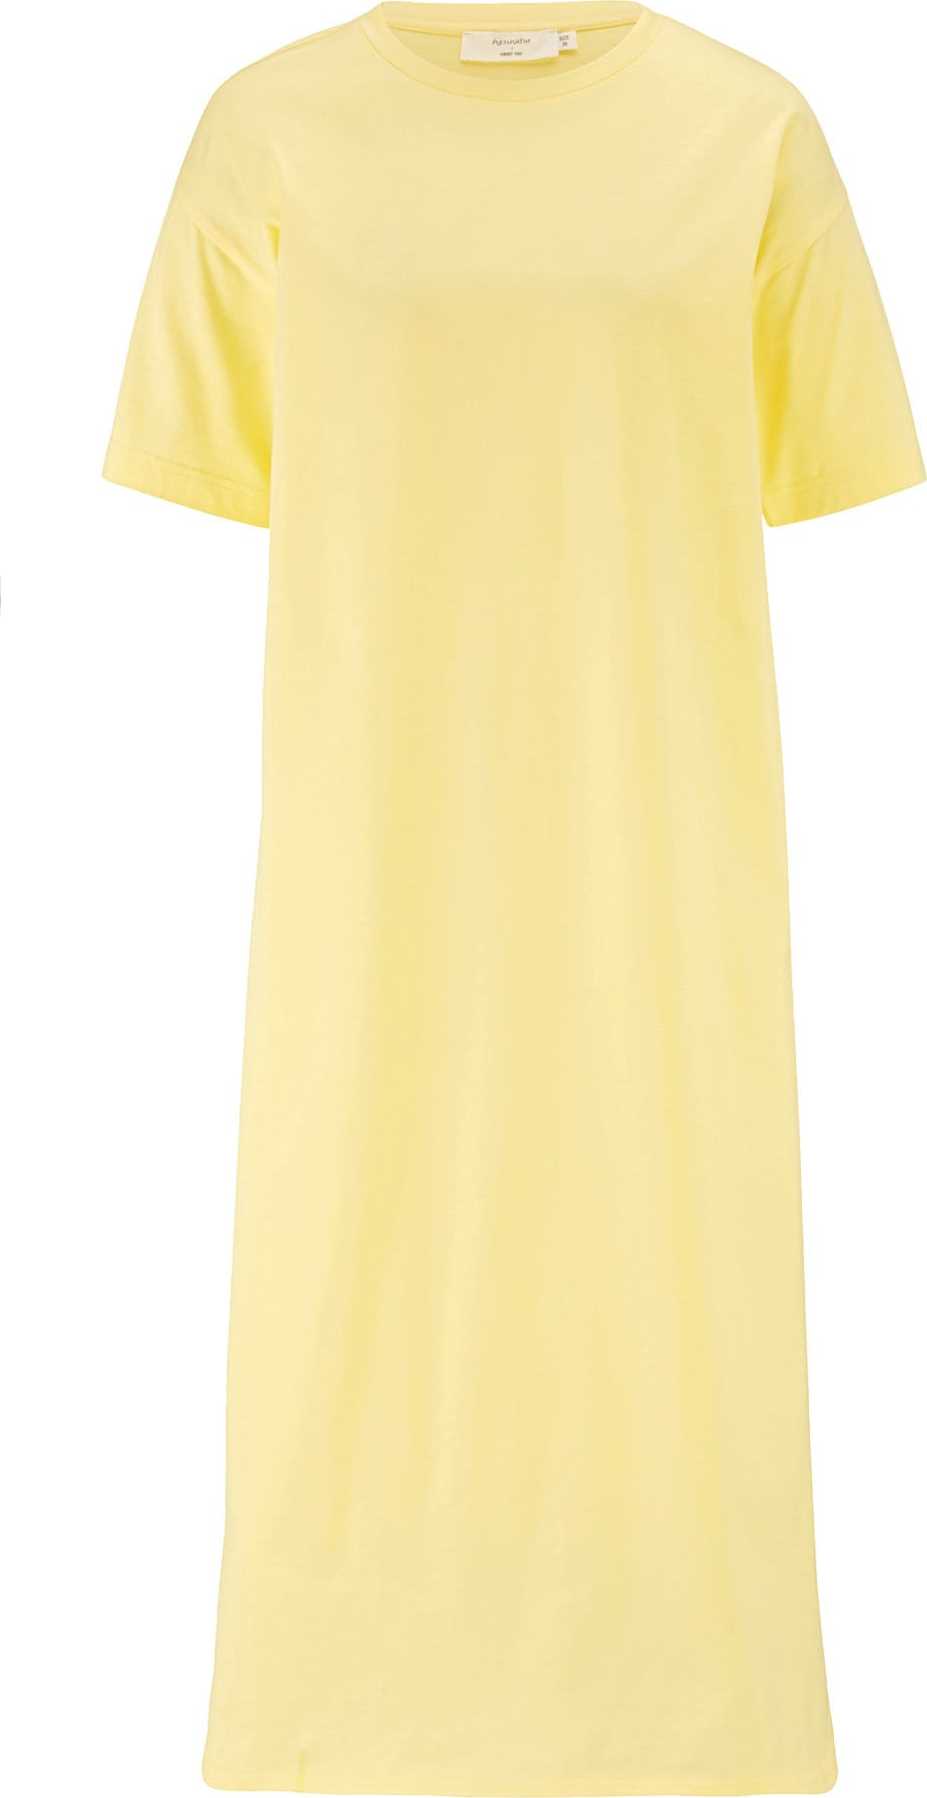 hessnatur Šaty světle žlutá